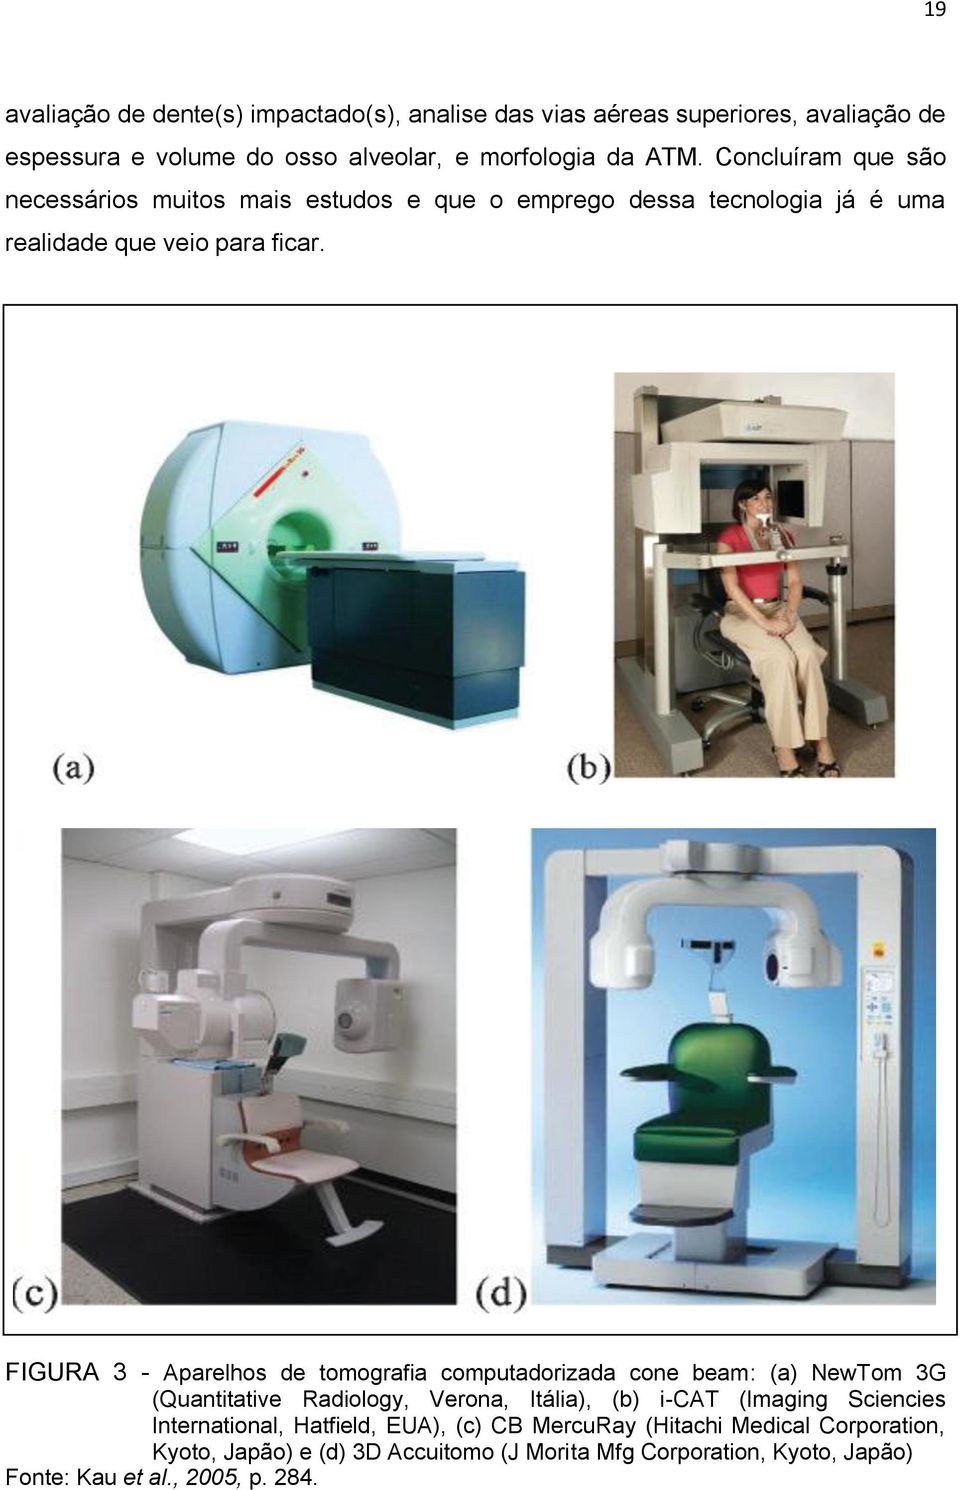 FIGURA 3 - Aparelhos de tomografia computadorizada cone beam: (a) NewTom 3G (Quantitative Radiology, Verona, Itália), (b) i-cat (Imaging Sciencies